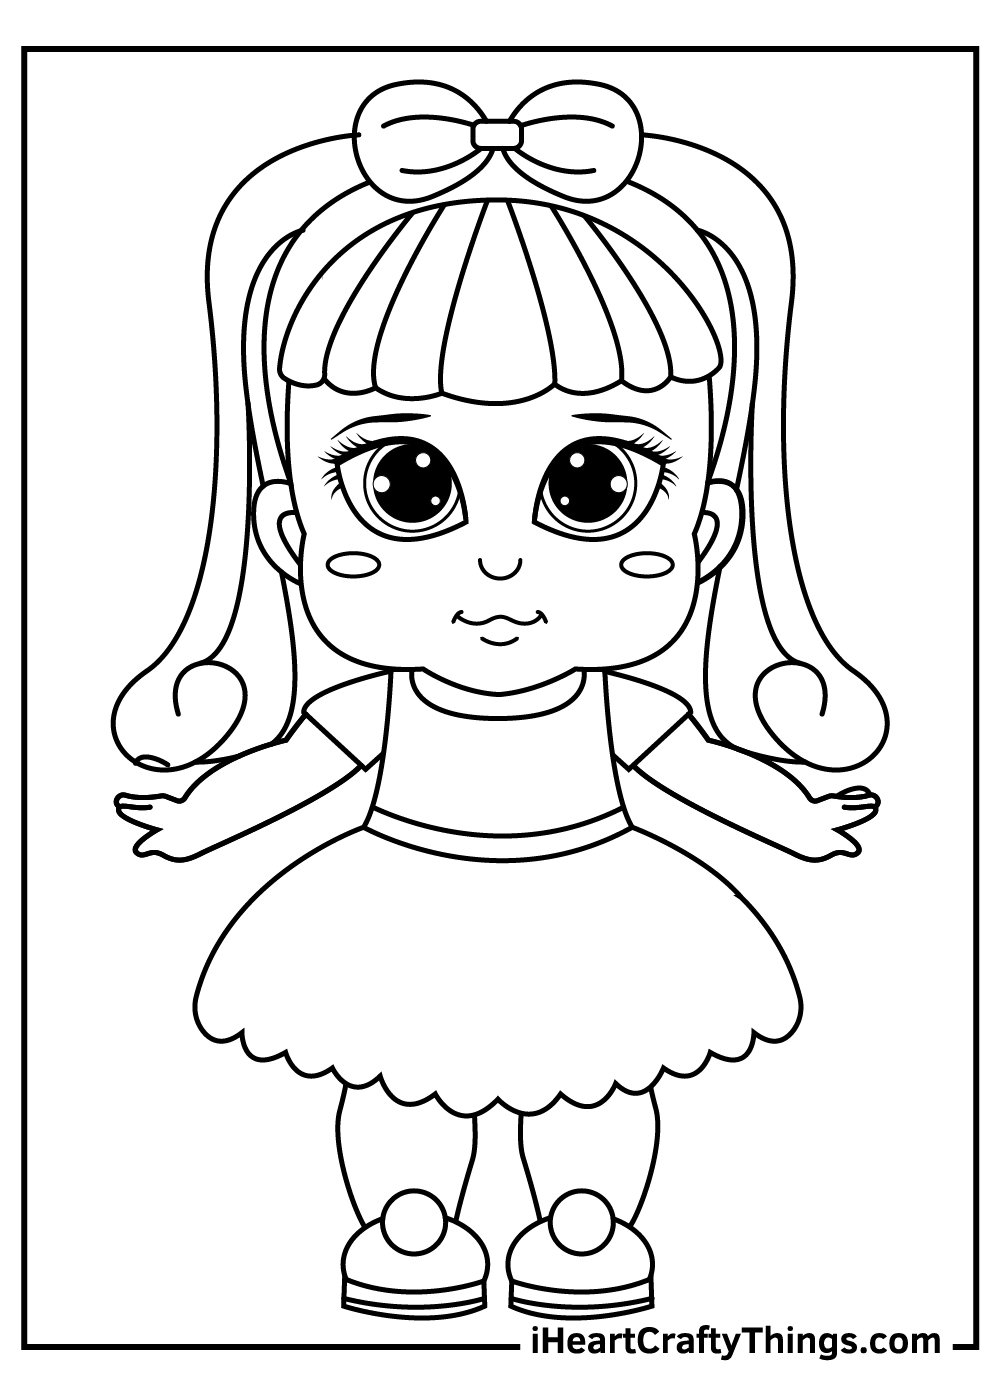 Раскраски куклы, Раскраска кукла одежда для девочки одежда для куклы бумажная кукла одень куклу.